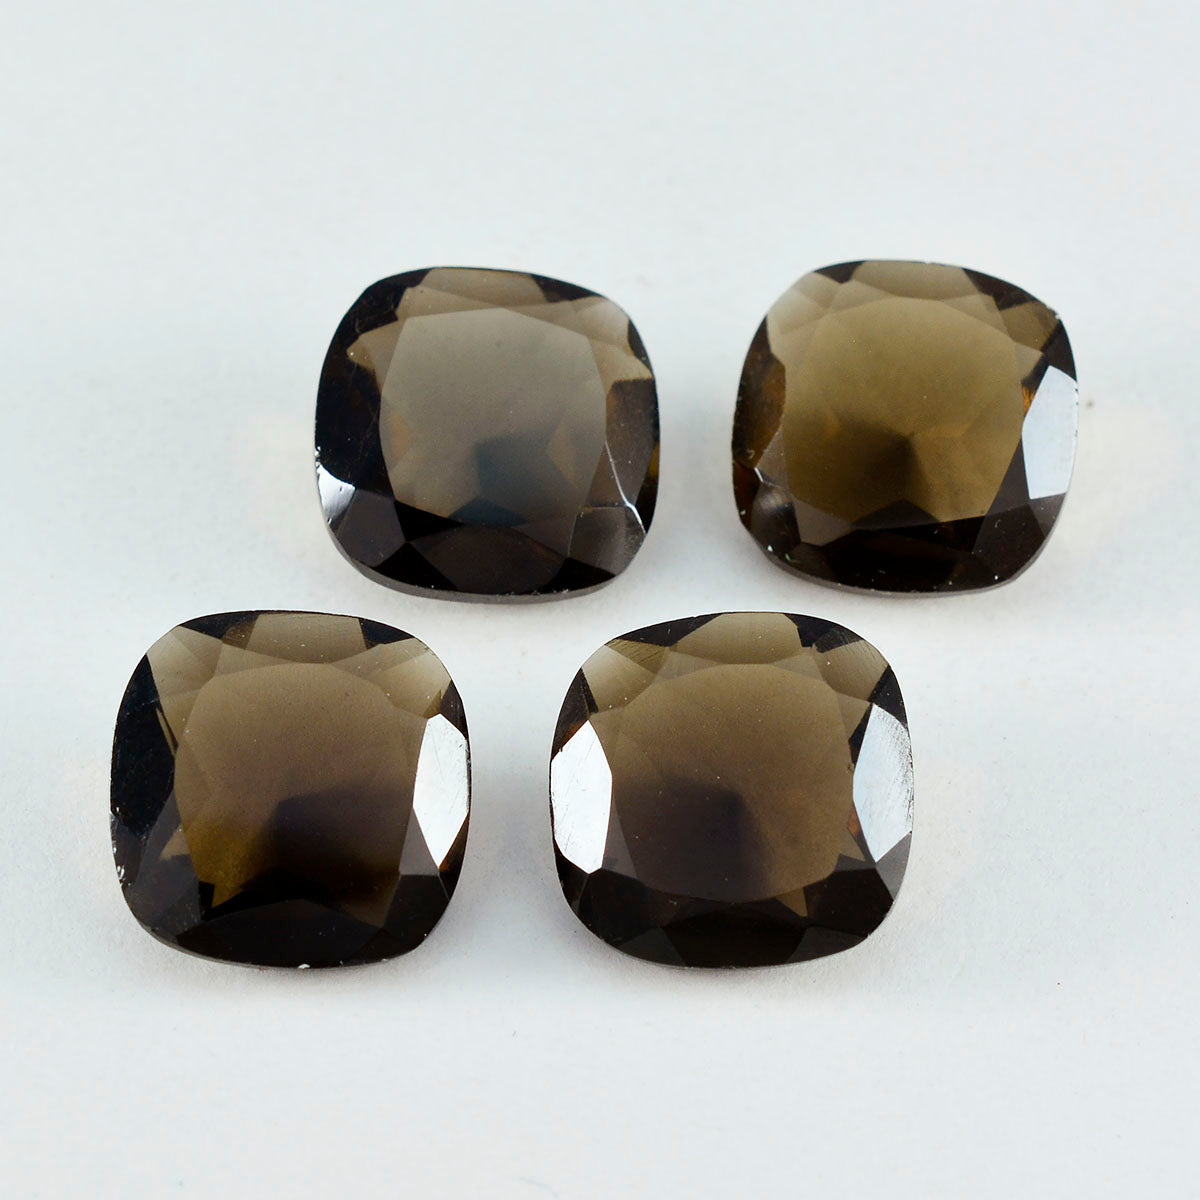 riyogems 1 шт. натуральный коричневый дымчатый кварц граненый 11x11 мм в форме подушки красивый качественный камень